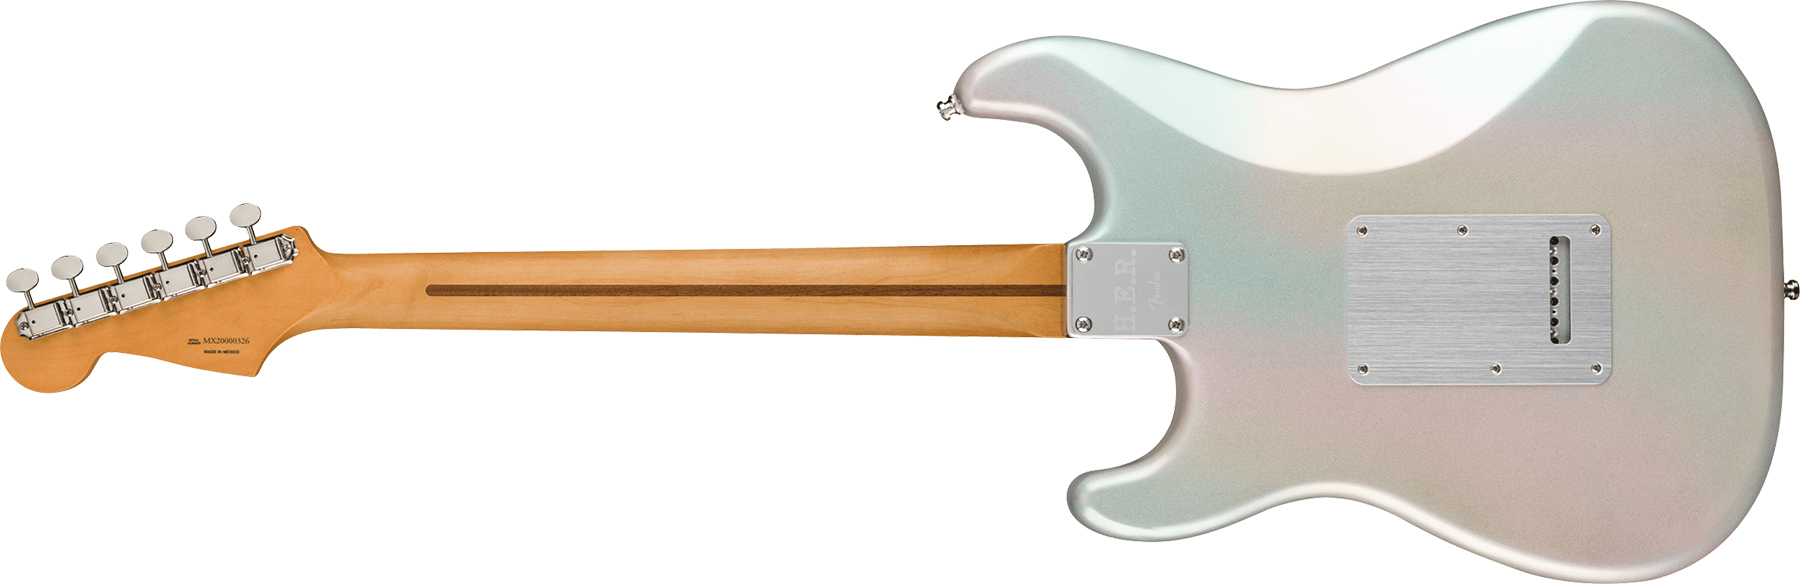 Fender H.e.r. Strat Signature Mex 3s Trem Mn - Chrome Glow - Guitare Électrique Forme Str - Variation 1